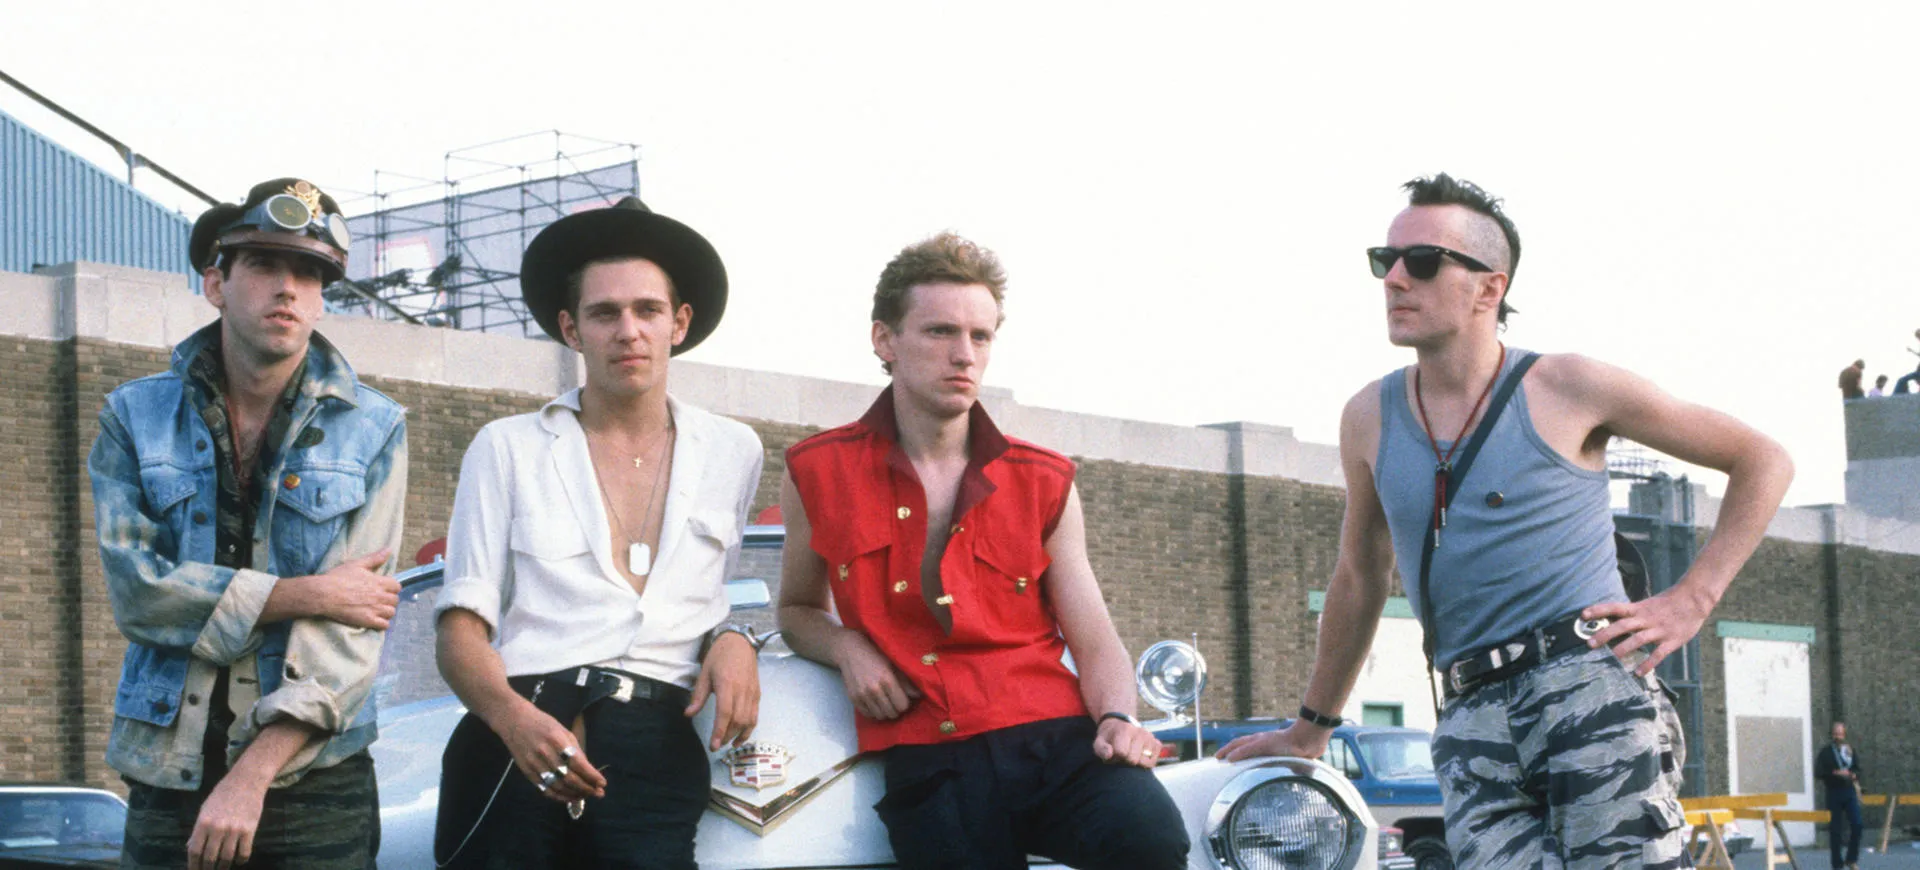 英国朋克摇滚乐队The Clash(冲撞乐队)1977-2022年发行专辑、精选辑、现场辑合集[无损FLAC/DVD/E-BOOK/62.90GB]百度云盘打包下载 影音资源 第1张